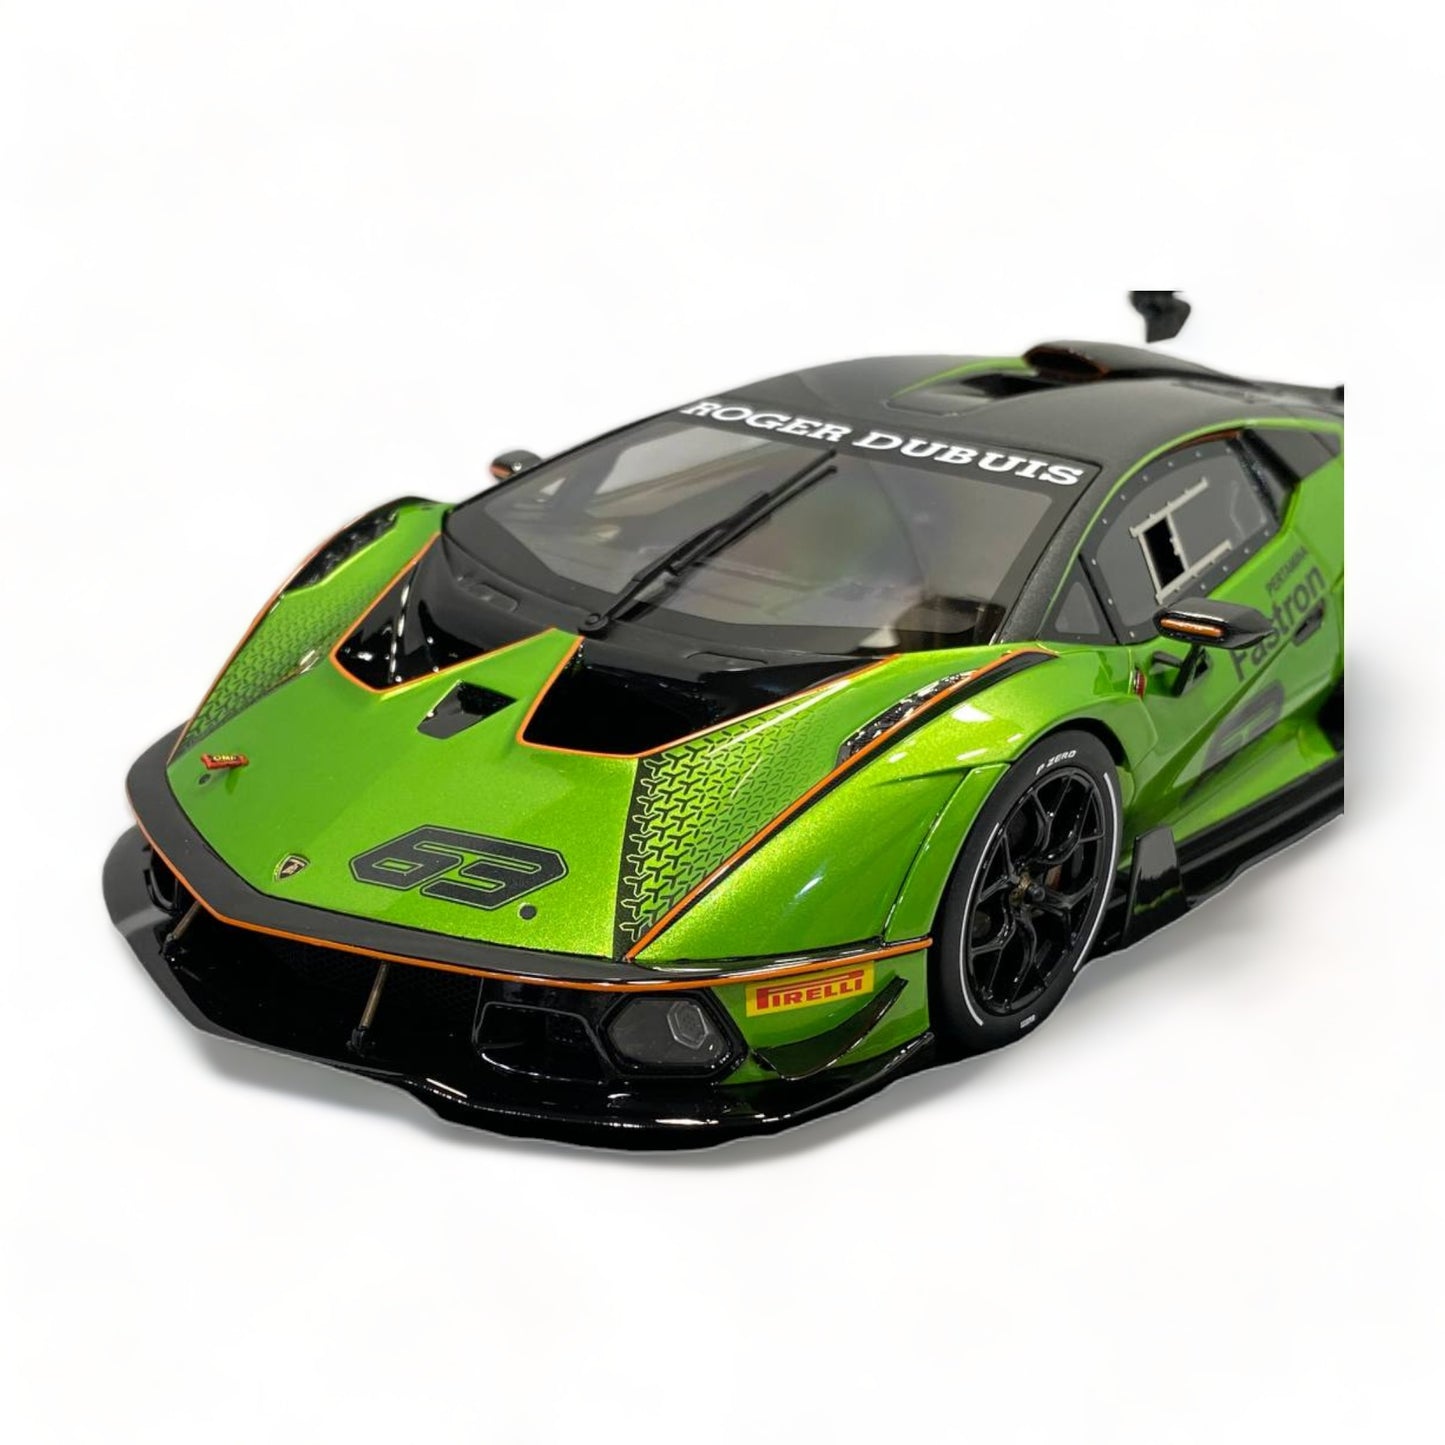 Lamborghini Essenza #63 Green by MR Collection 1/18